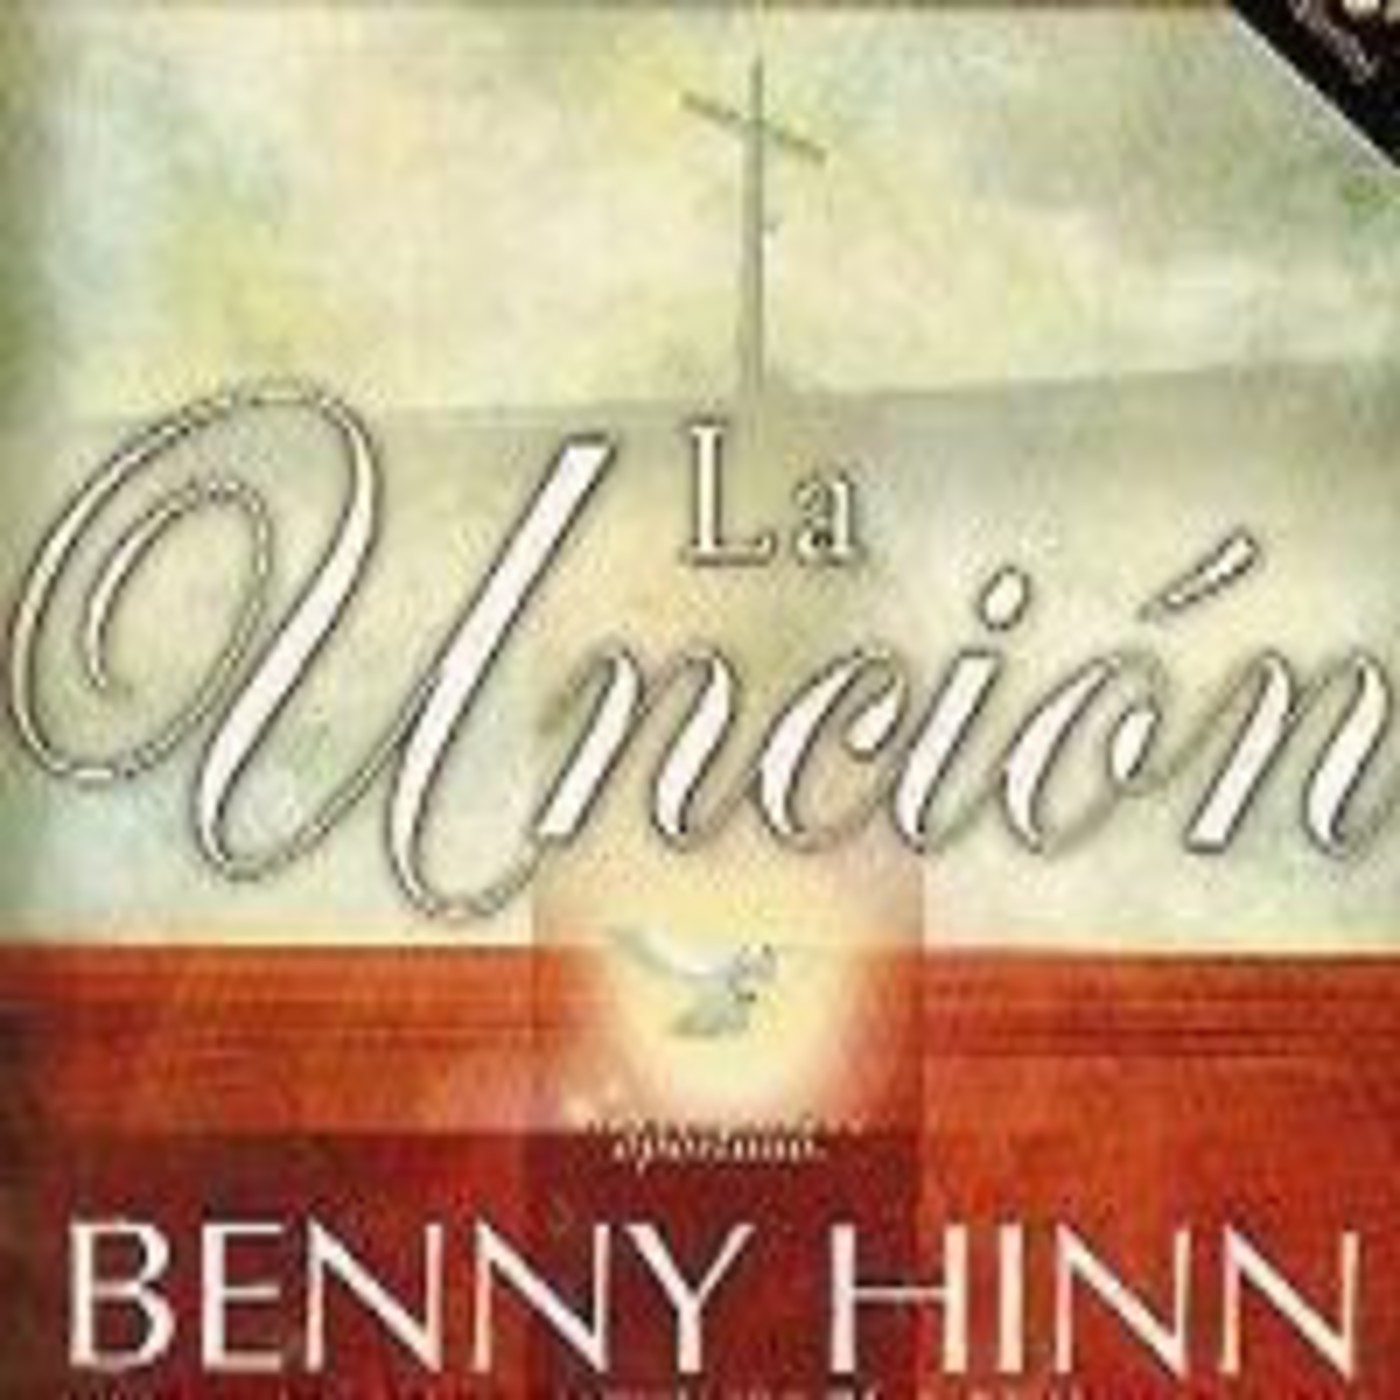 La Uncion Benny Hinn Pdf